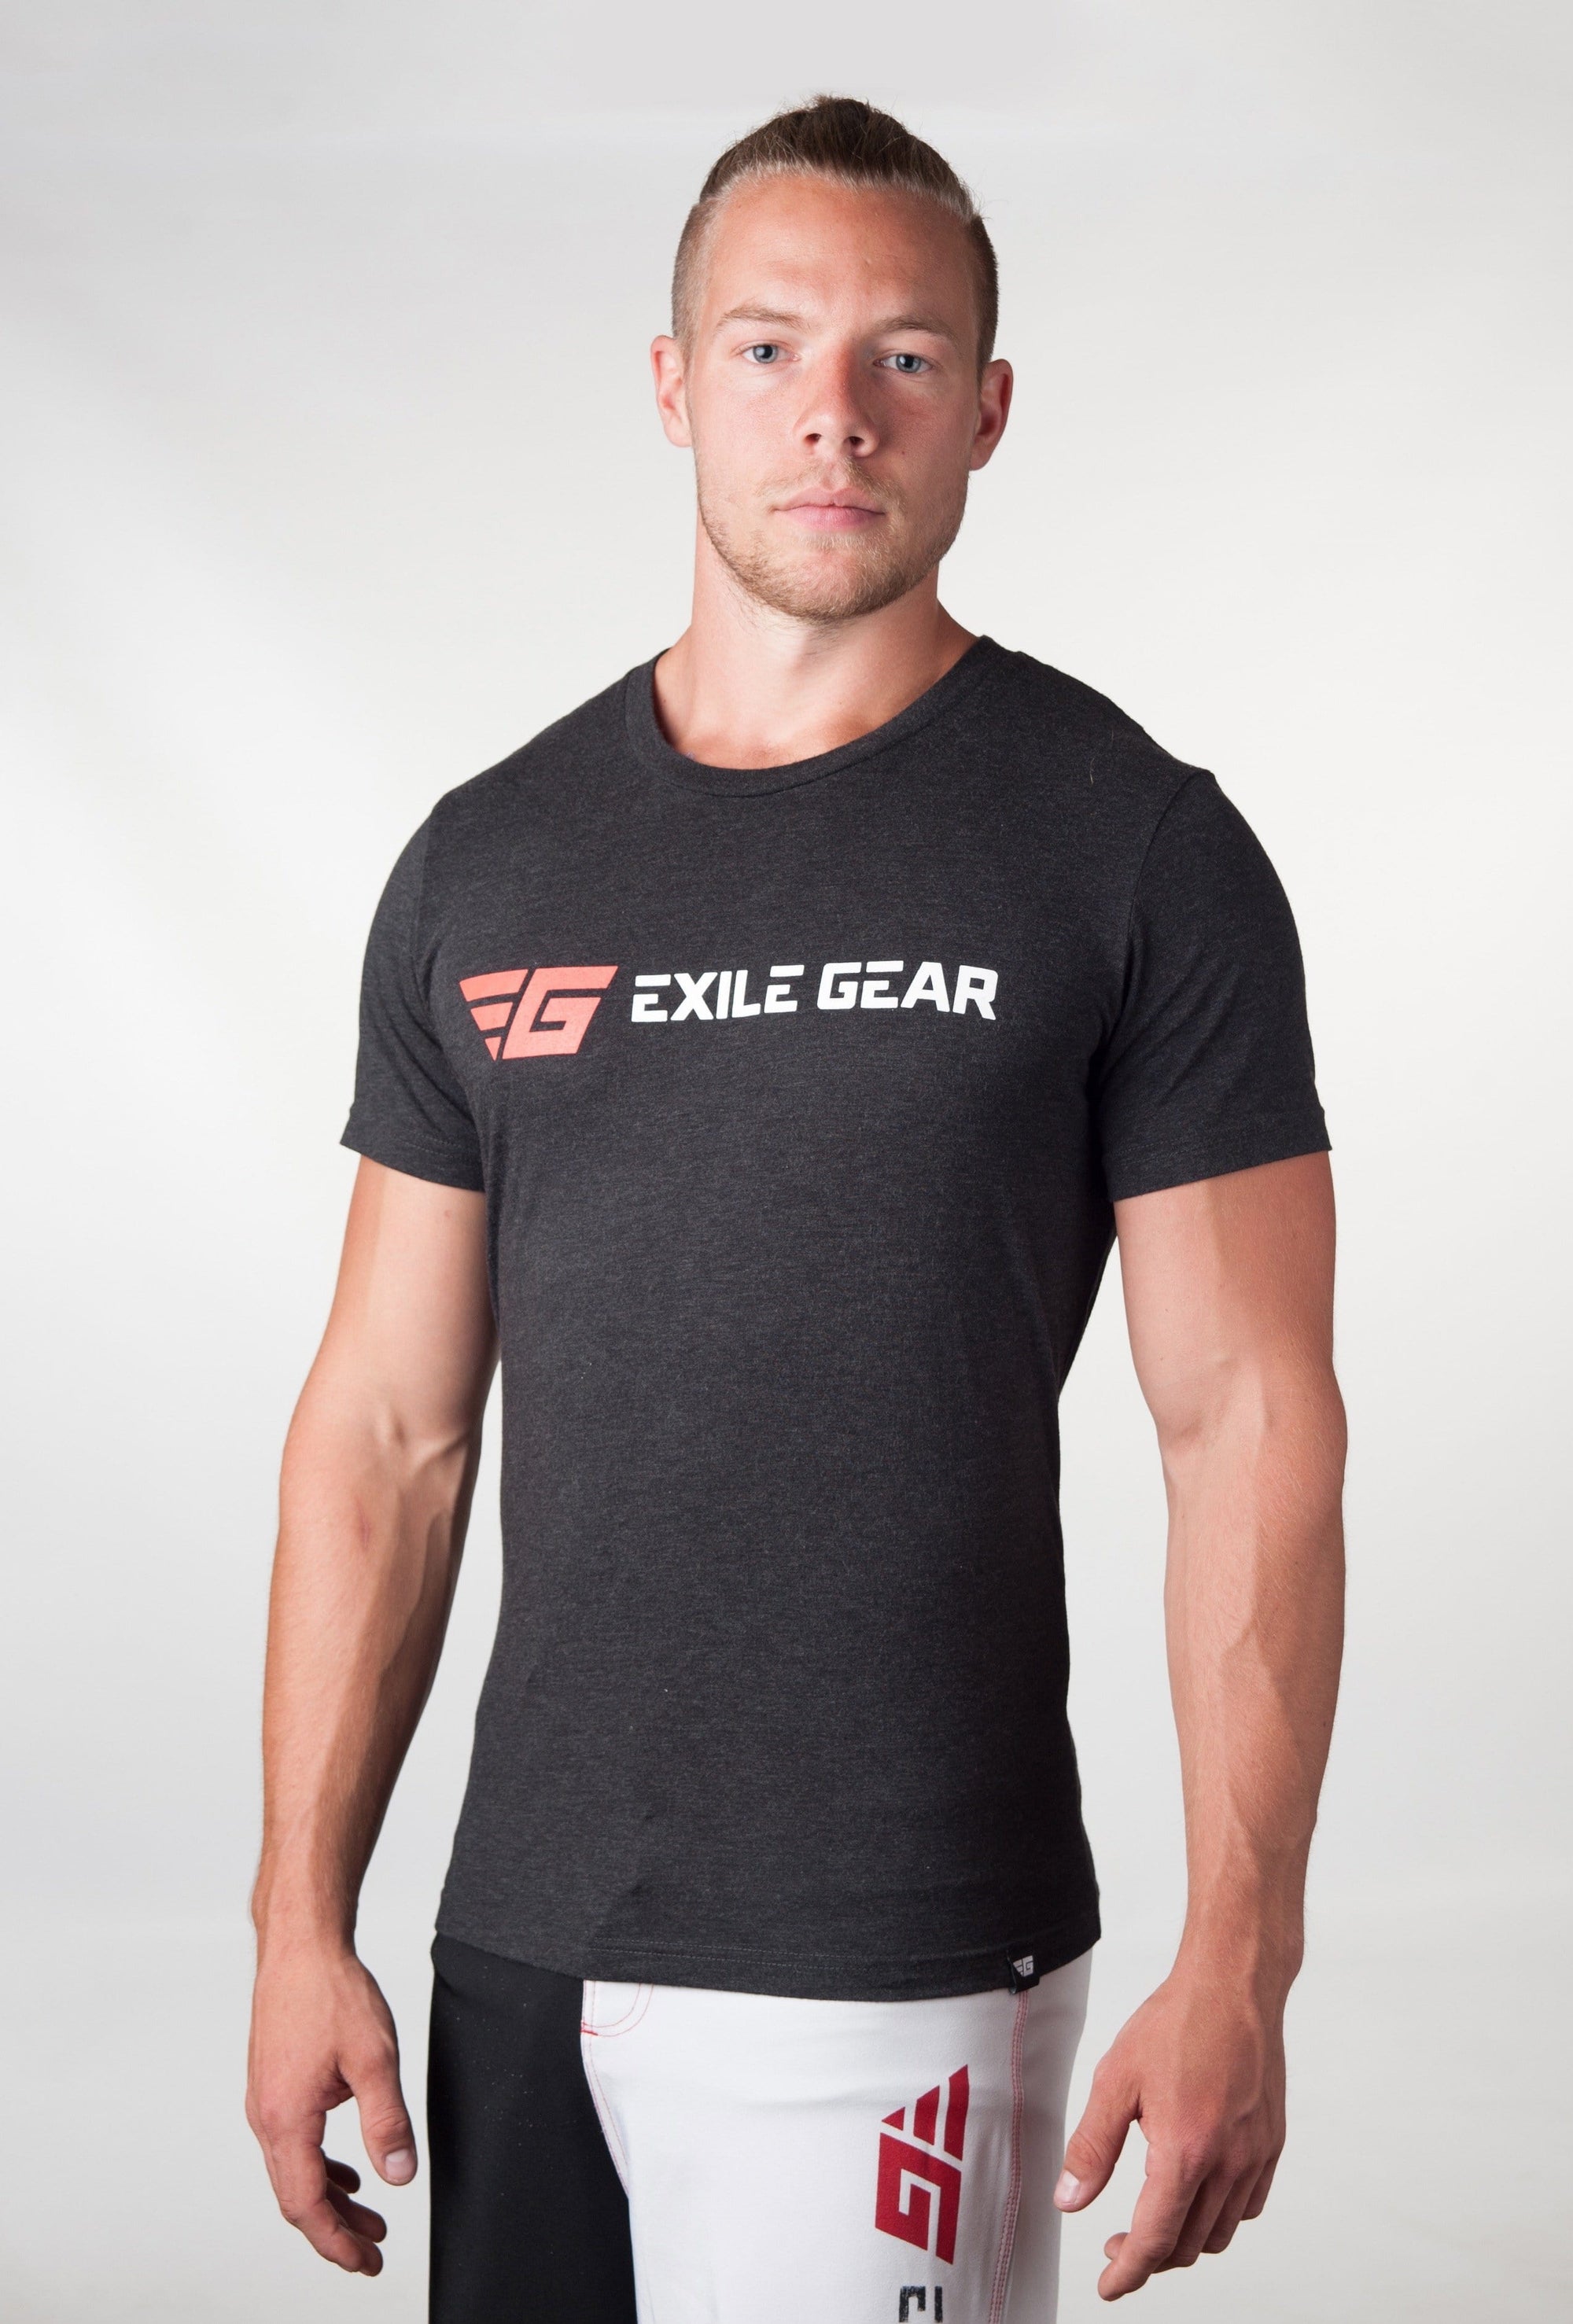 Men's Exile Gear T-Shirt